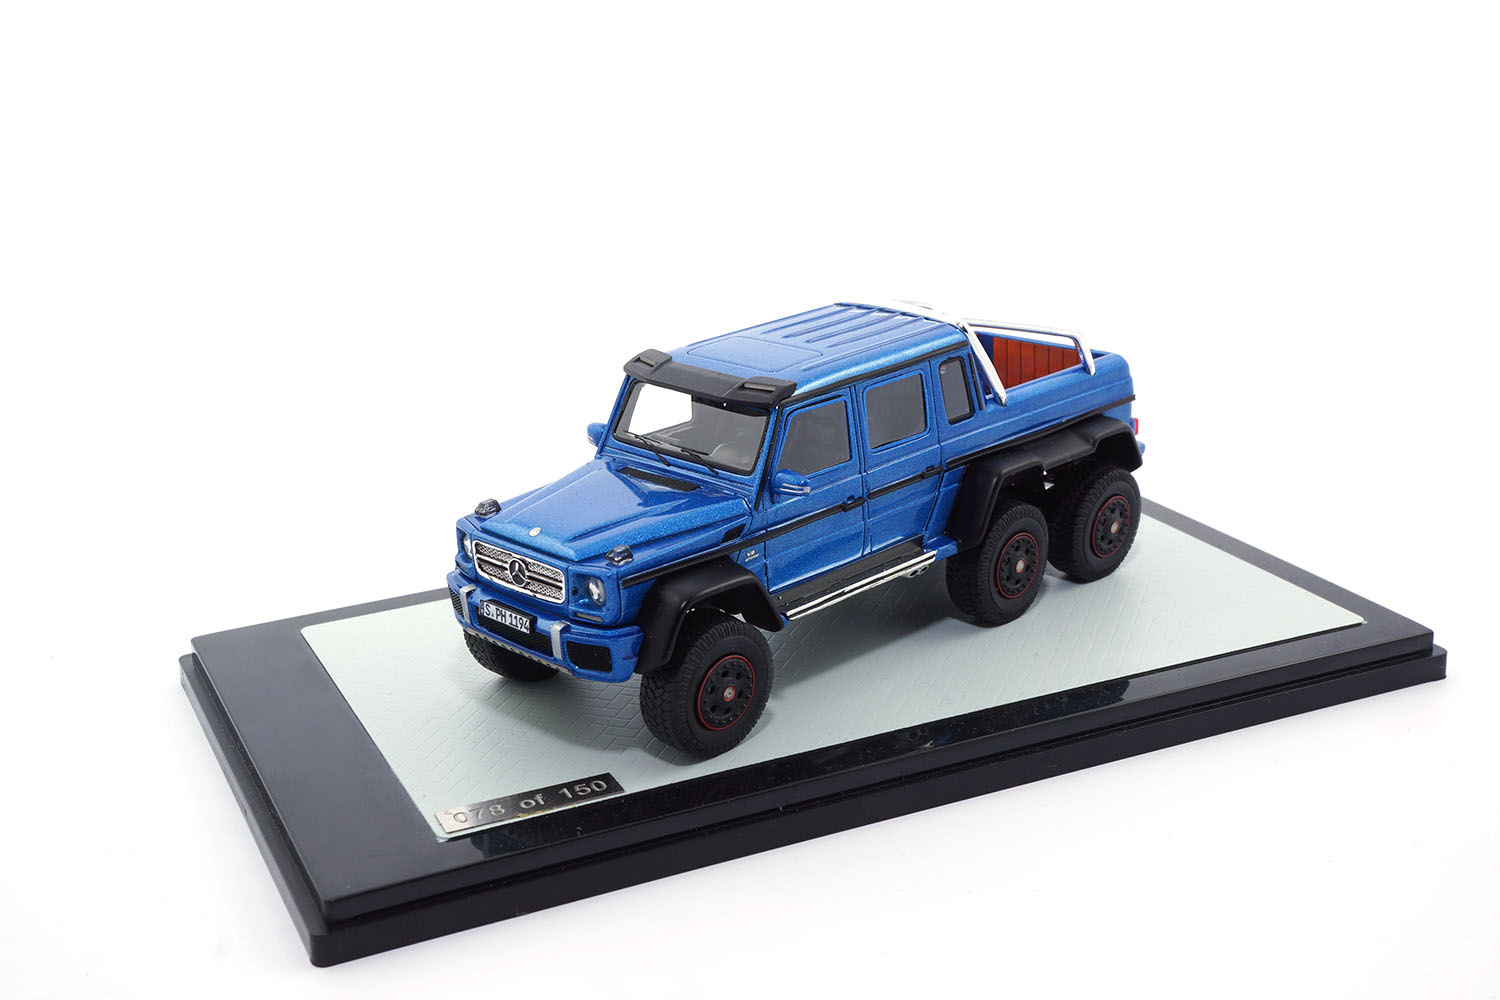 Peako 31700 Mercedes-Benz G63 AMG - Blue Metallic 1:43